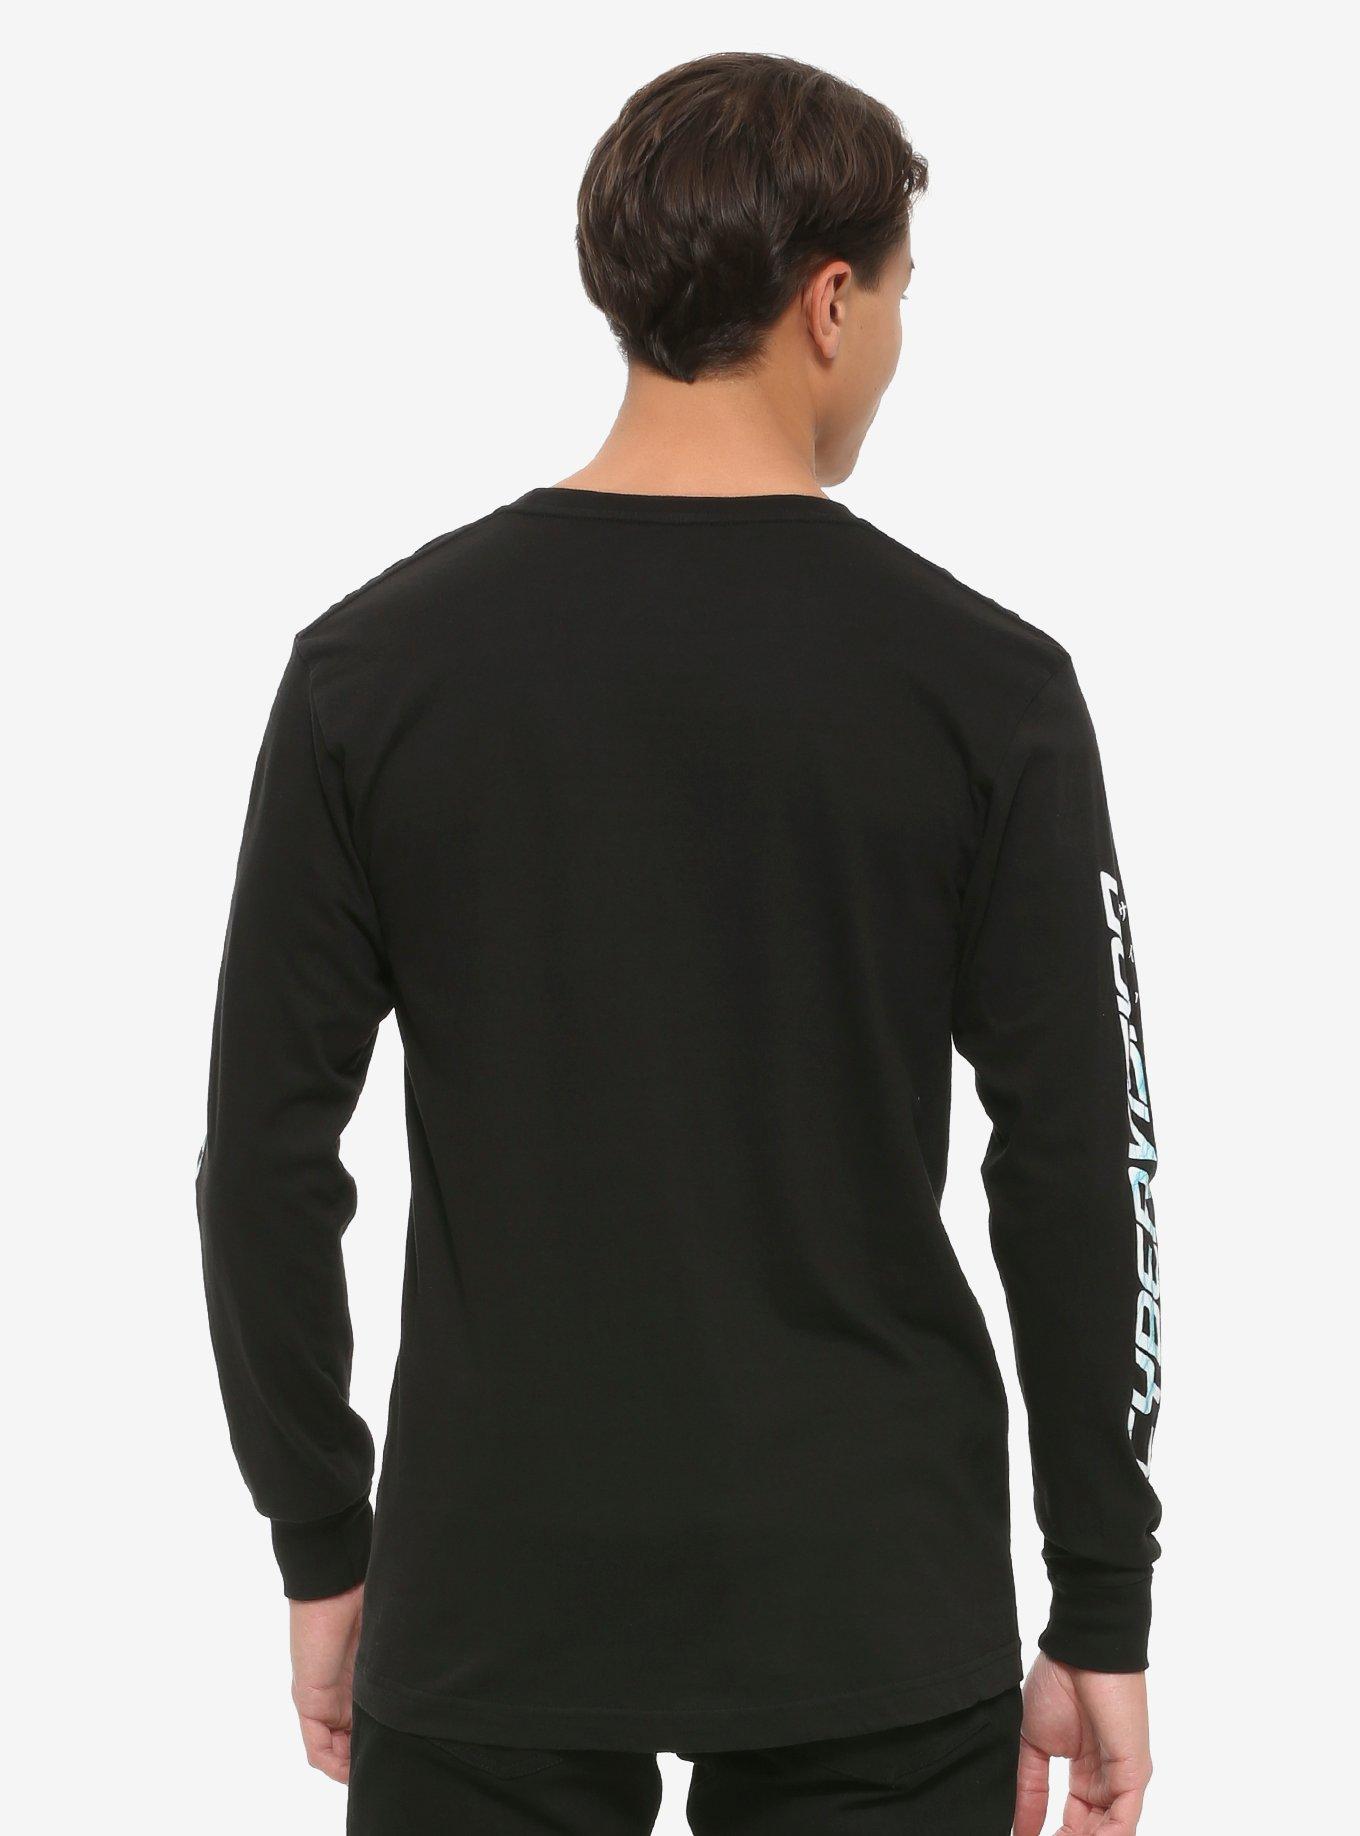 Vapor95 Cyber Vision Long-Sleeve T-Shirt, BLACK, alternate